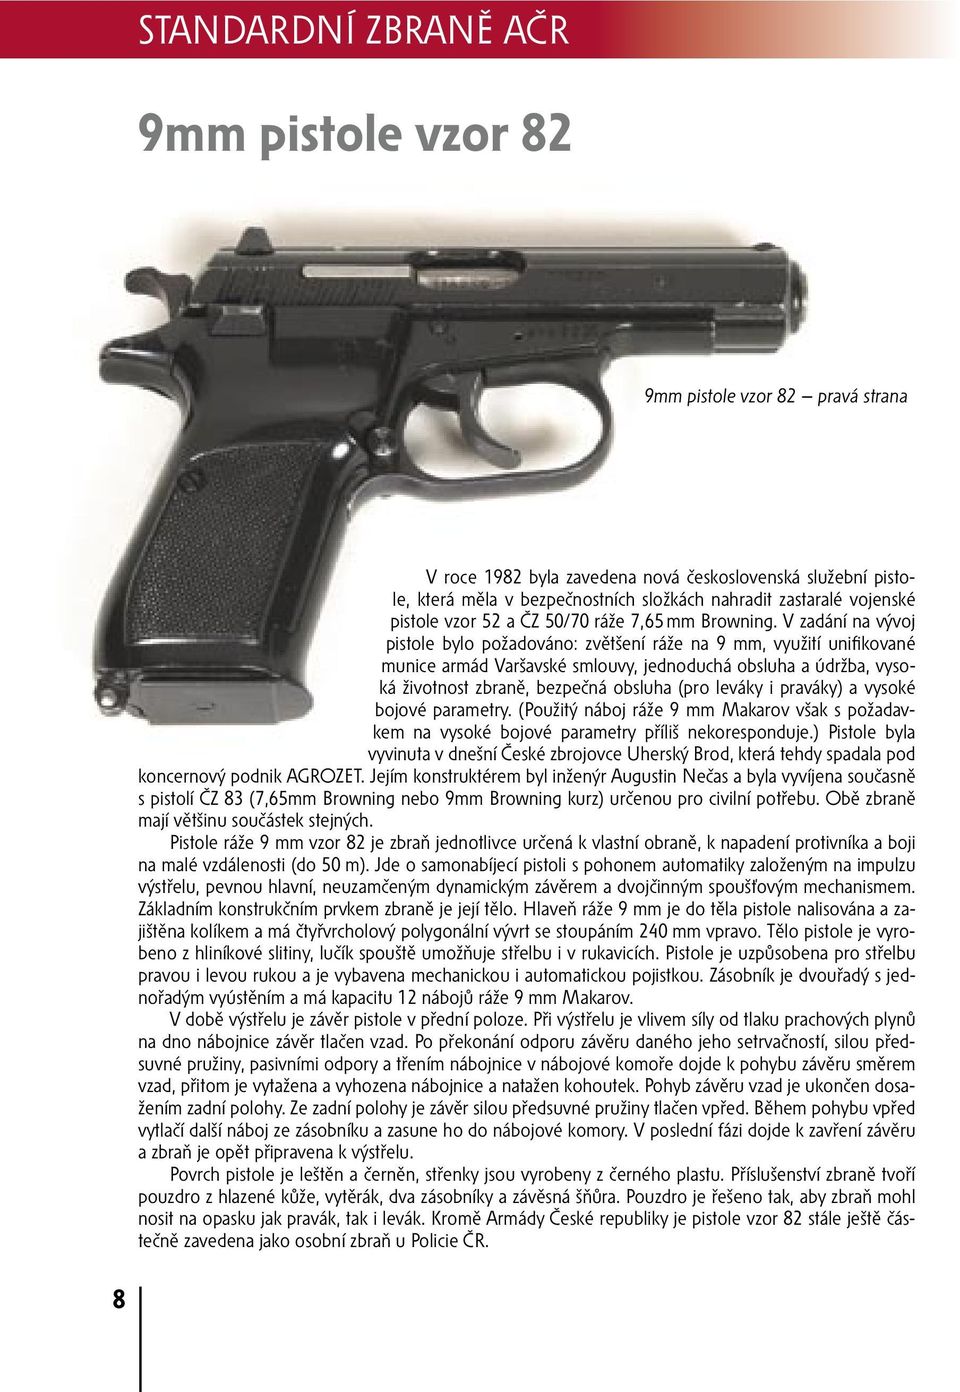 V zadání na vývoj pistole bylo požadováno: zvětšení ráže na 9 mm, využití unifikované munice armád Varšavské smlouvy, jednoduchá obsluha a údržba, vysoká životnost zbraně, bezpečná obsluha (pro